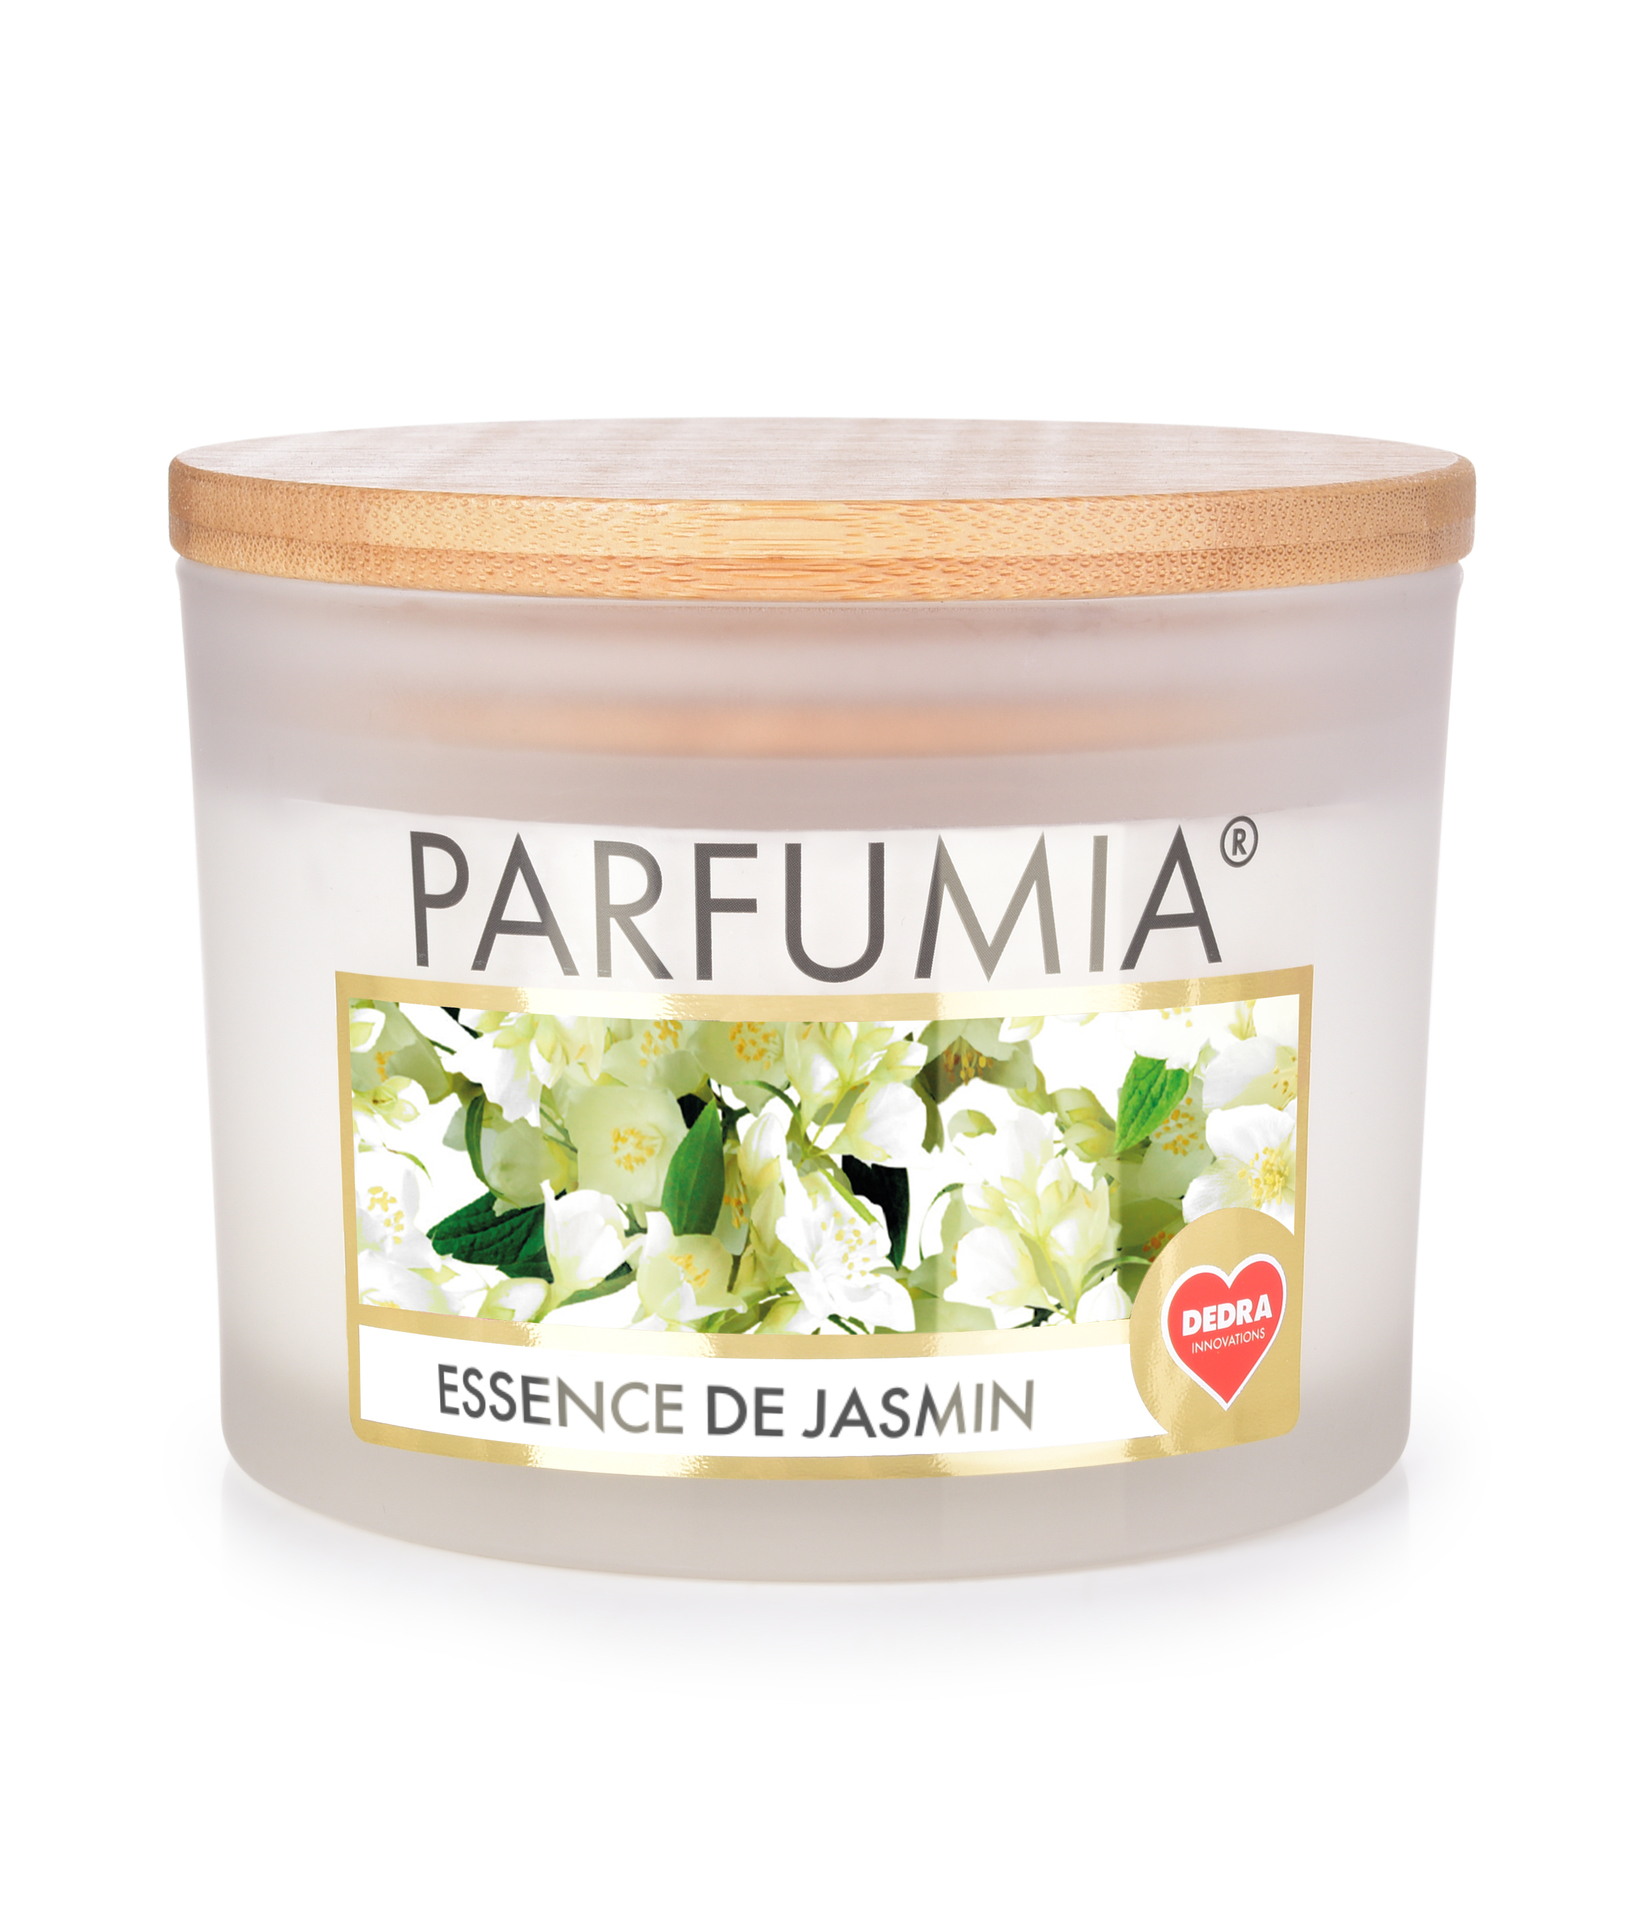 INTENSE 2 KNOTY sójová vonná EKO svíce PARFUMIA®  ESSENCE DE JASMIN